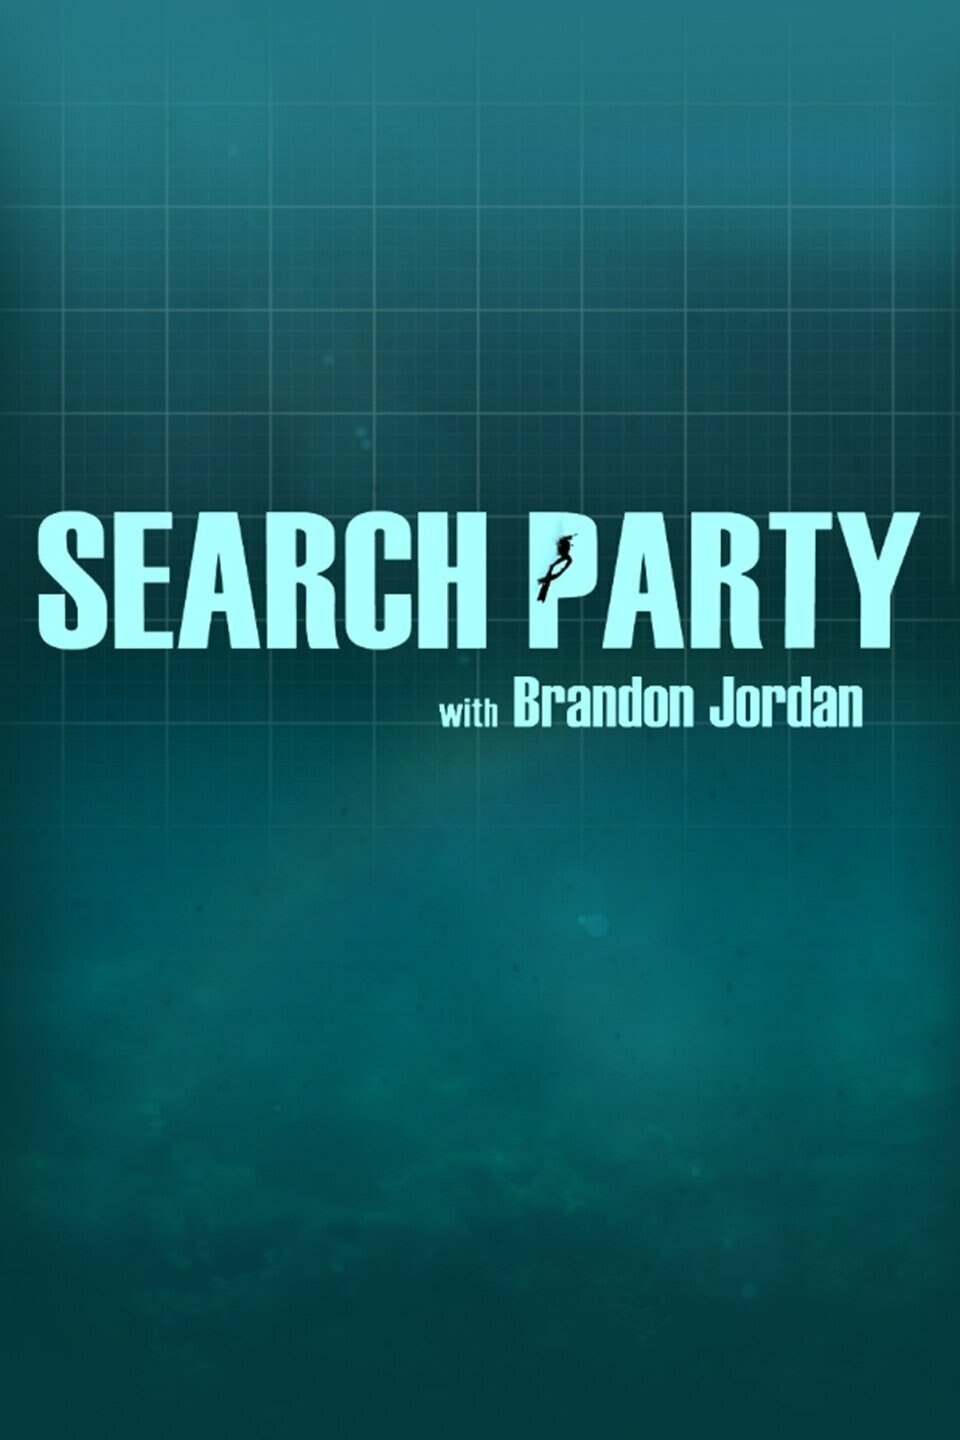 Search Party with Brandon Jordan ne zaman